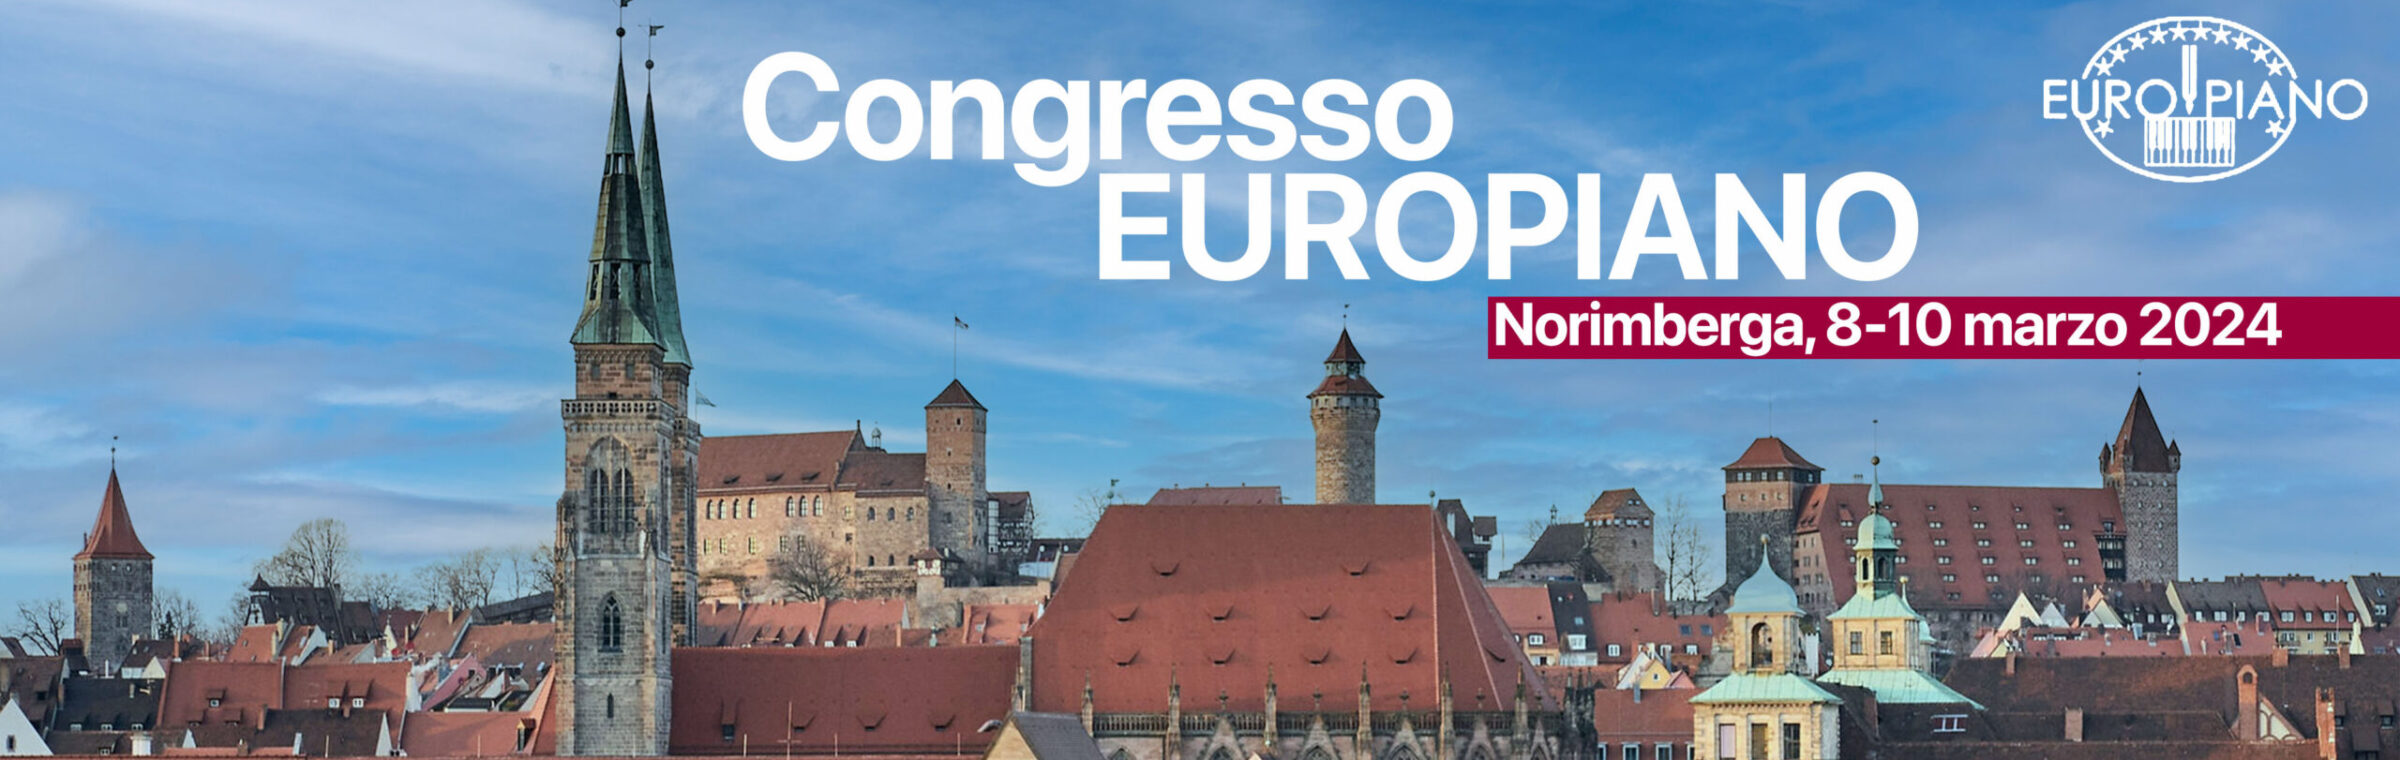 Congresso Europiano